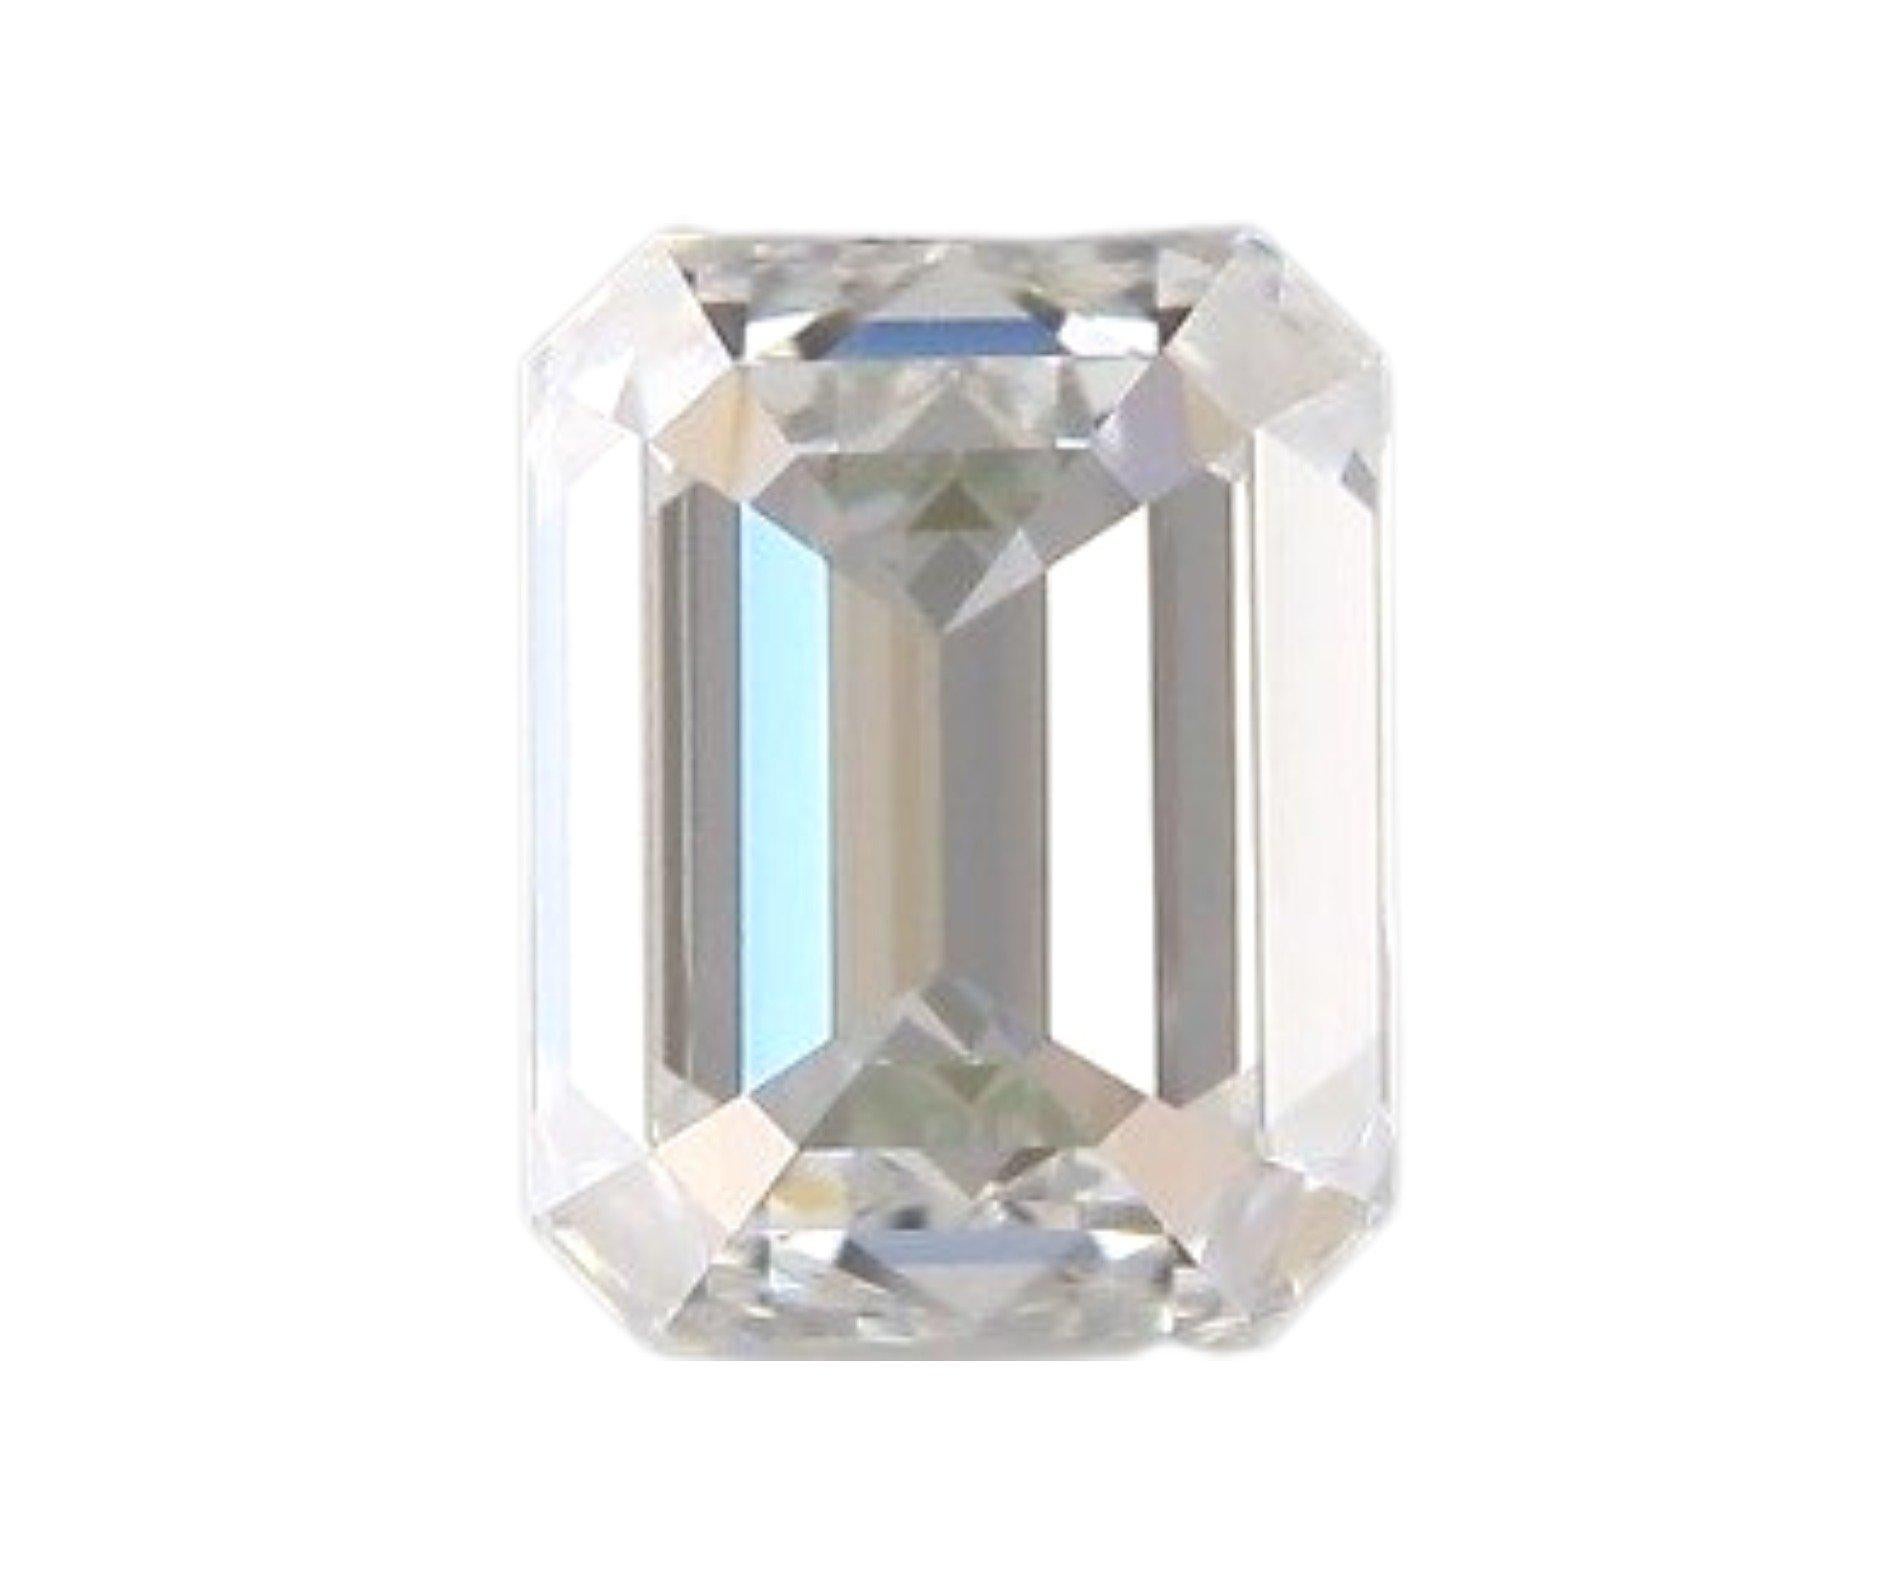 Natürliche Diamanten im Smaragdschliff mit einem Gewicht von 0,81 Karat I IF mit schönem Schliff und Glanz. Diese Diamanten werden mit einem GIA-Zertifikat und einer Laserbeschriftungsnummer geliefert.

MKN-190 & MKN-191

GIA 6392564930 & 7408056858